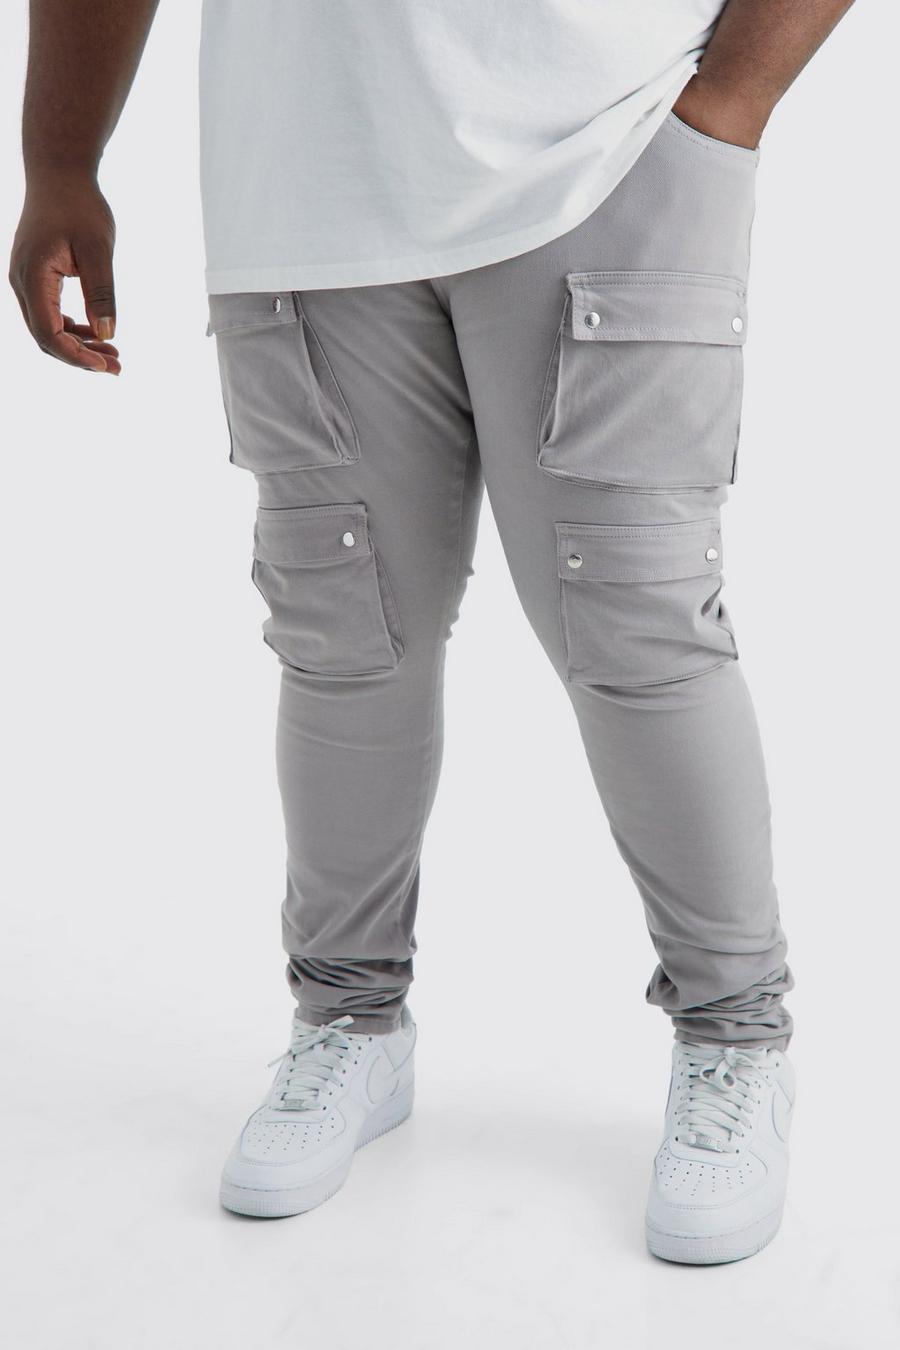 Pantaloni Plus Size Skinny Fit con tasche Cargo e vita fissa, Dark grey